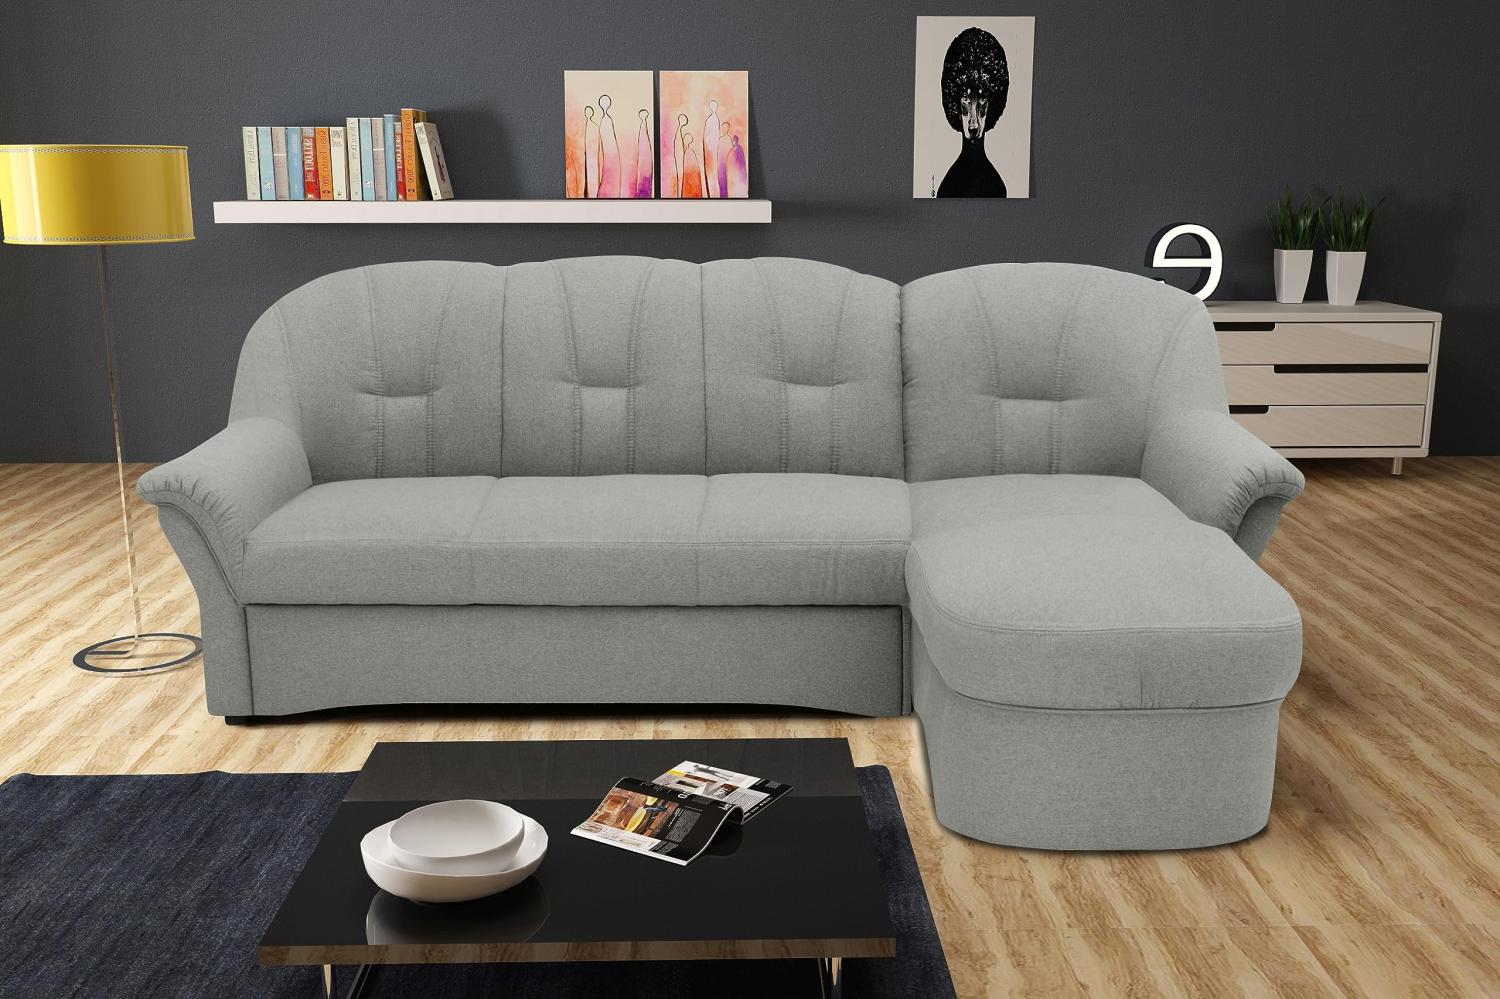 DOMO Collection Puno Ecksofa, Sofa in L-Form, Eckcouch, Sofa, Couch mit Longchair, 233 x 142 cm, Polstermöbel in silber Bild 1